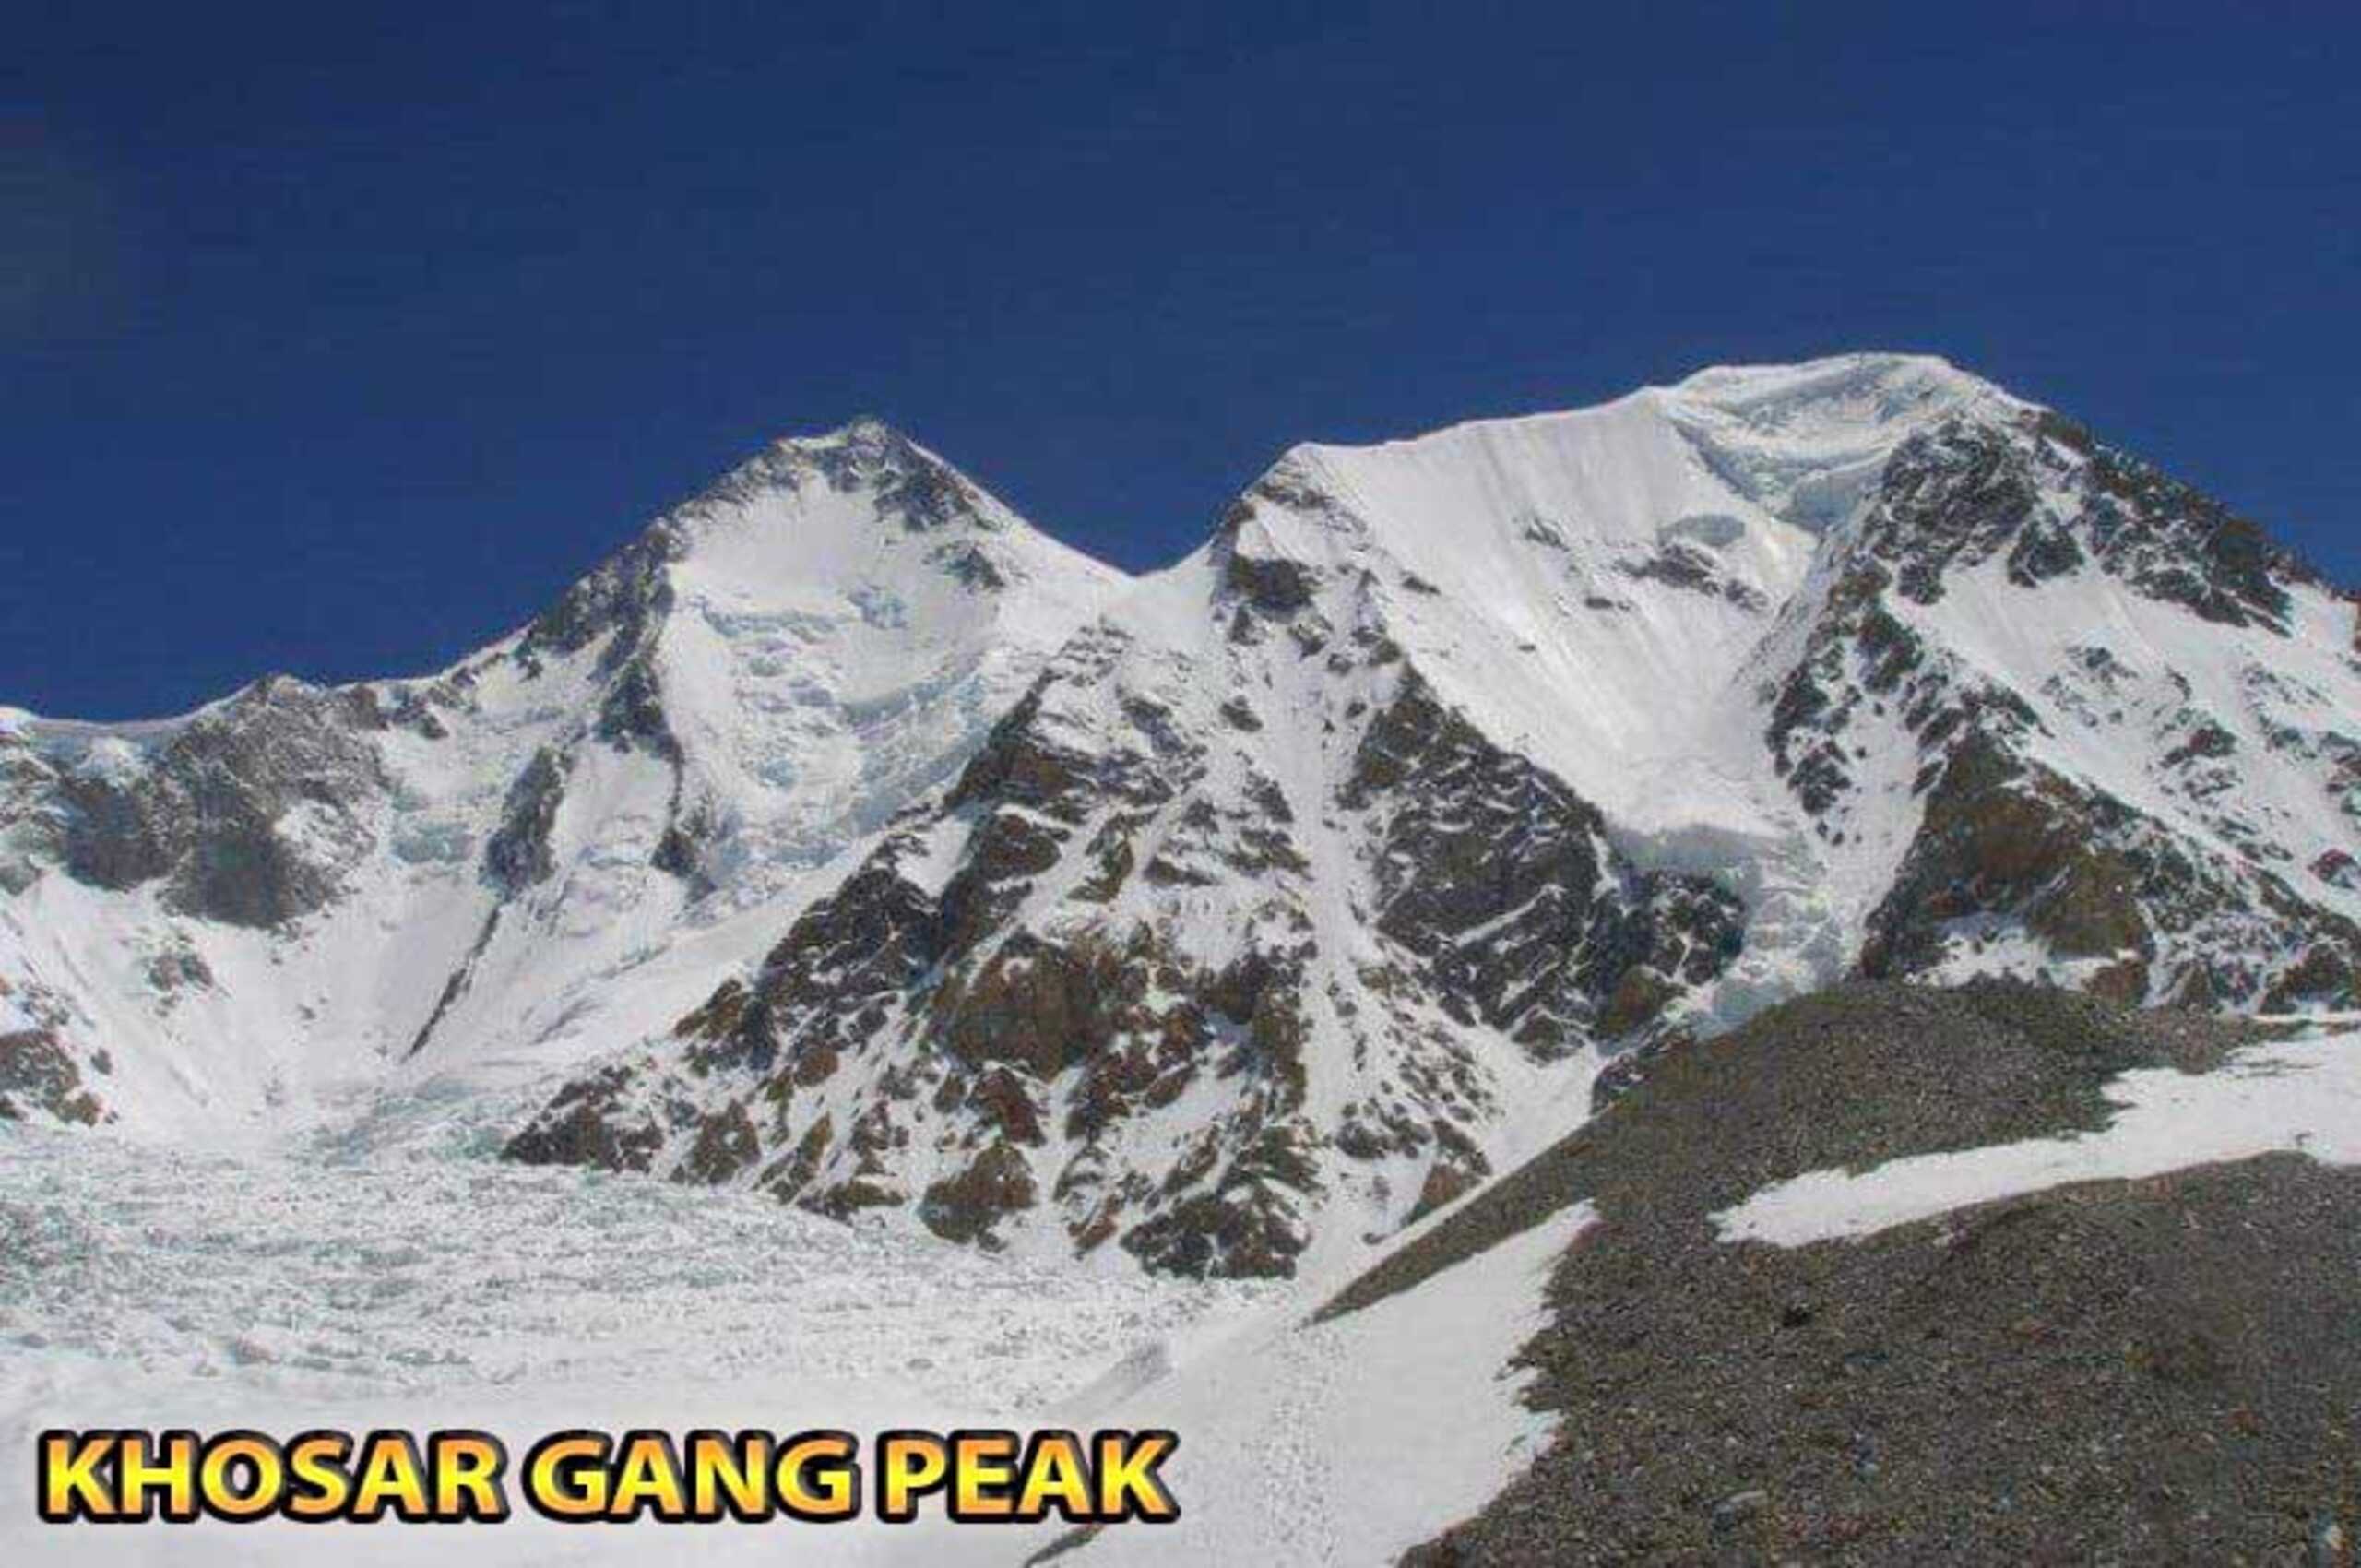 Khosar Gang Peak